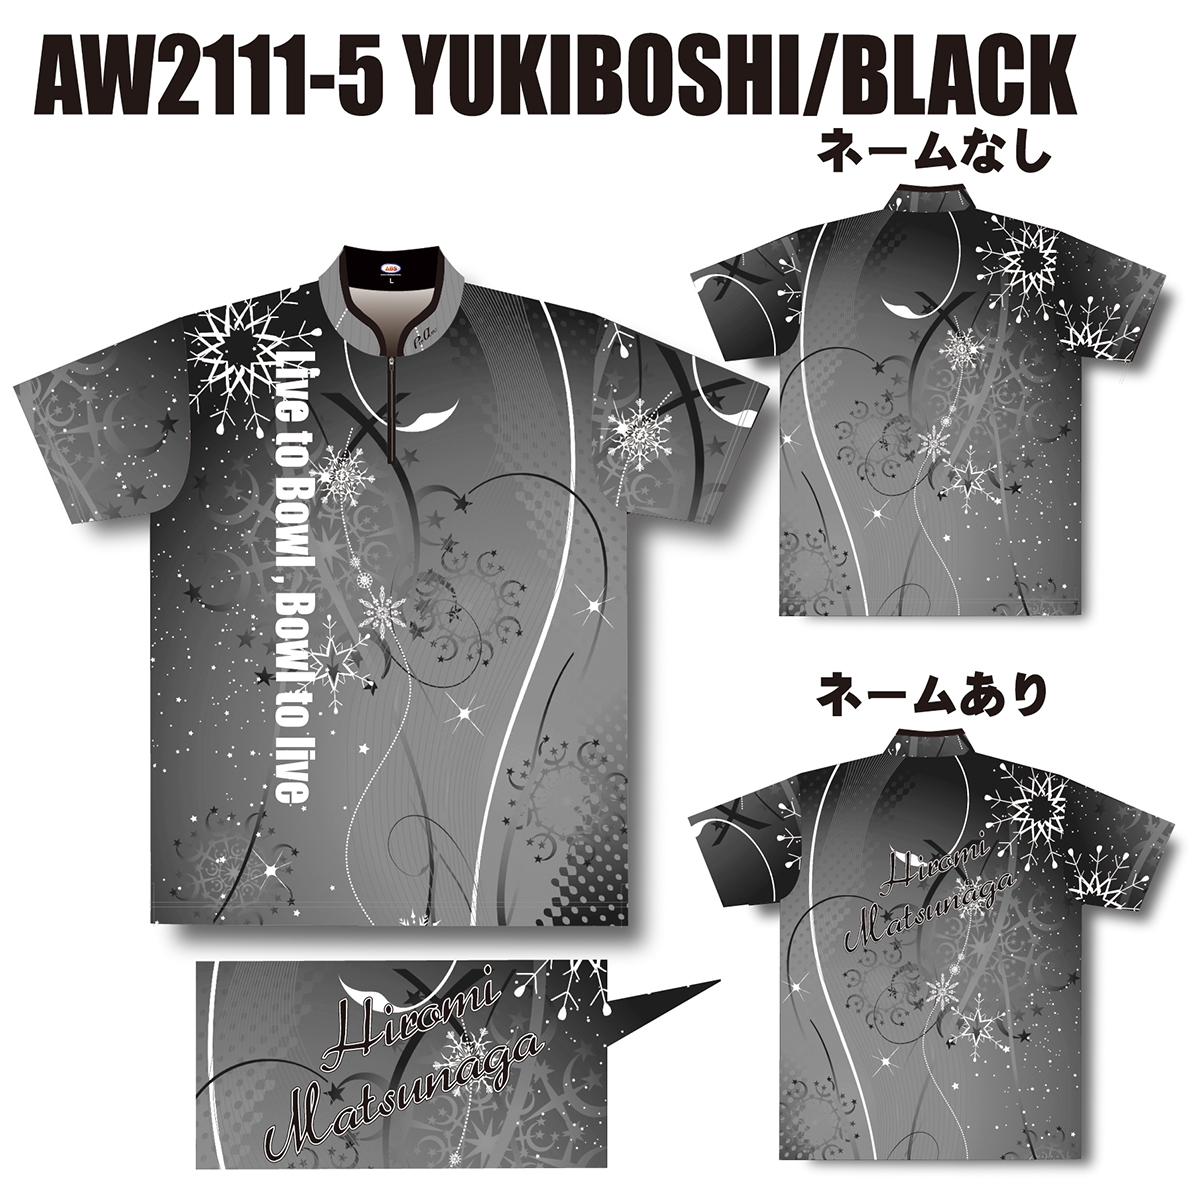 2021ウインターモデル(AW2111-5 YUKIBOSHI/BLACK)